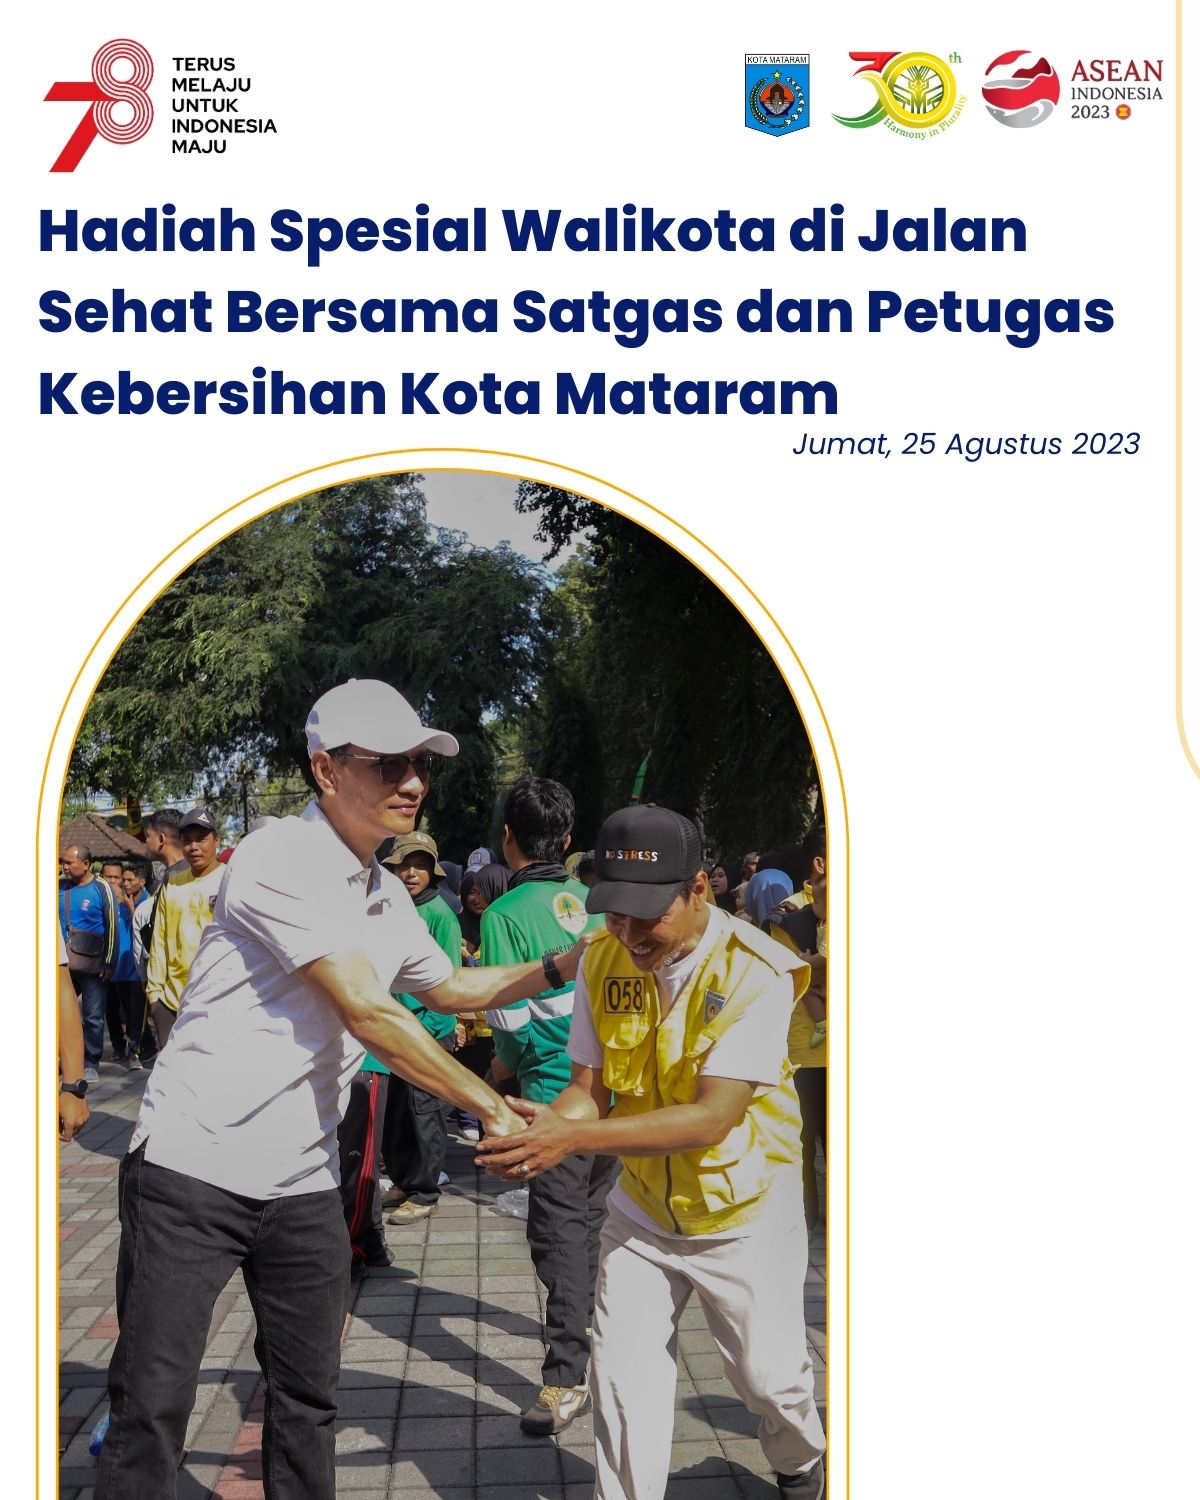 Hadiah Spesial Wali Kota di Jalan Sehat bersama Satgas dan Petugas Kebersihan Kota Mataram